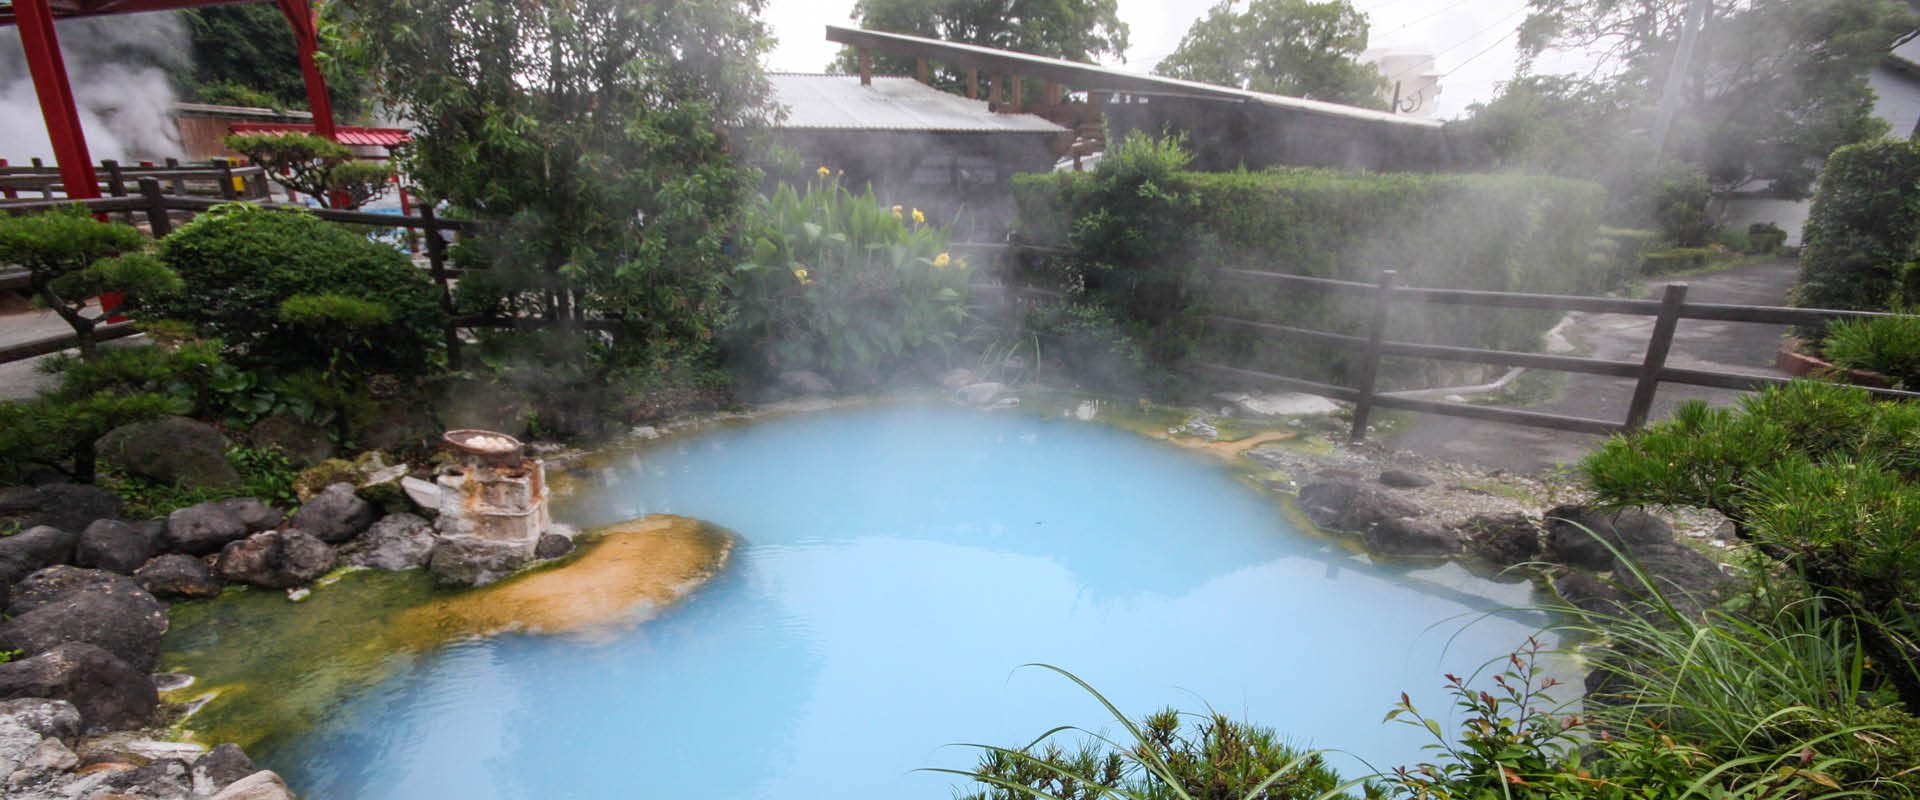 kamegawa hot spring blue water steam rising 12 5